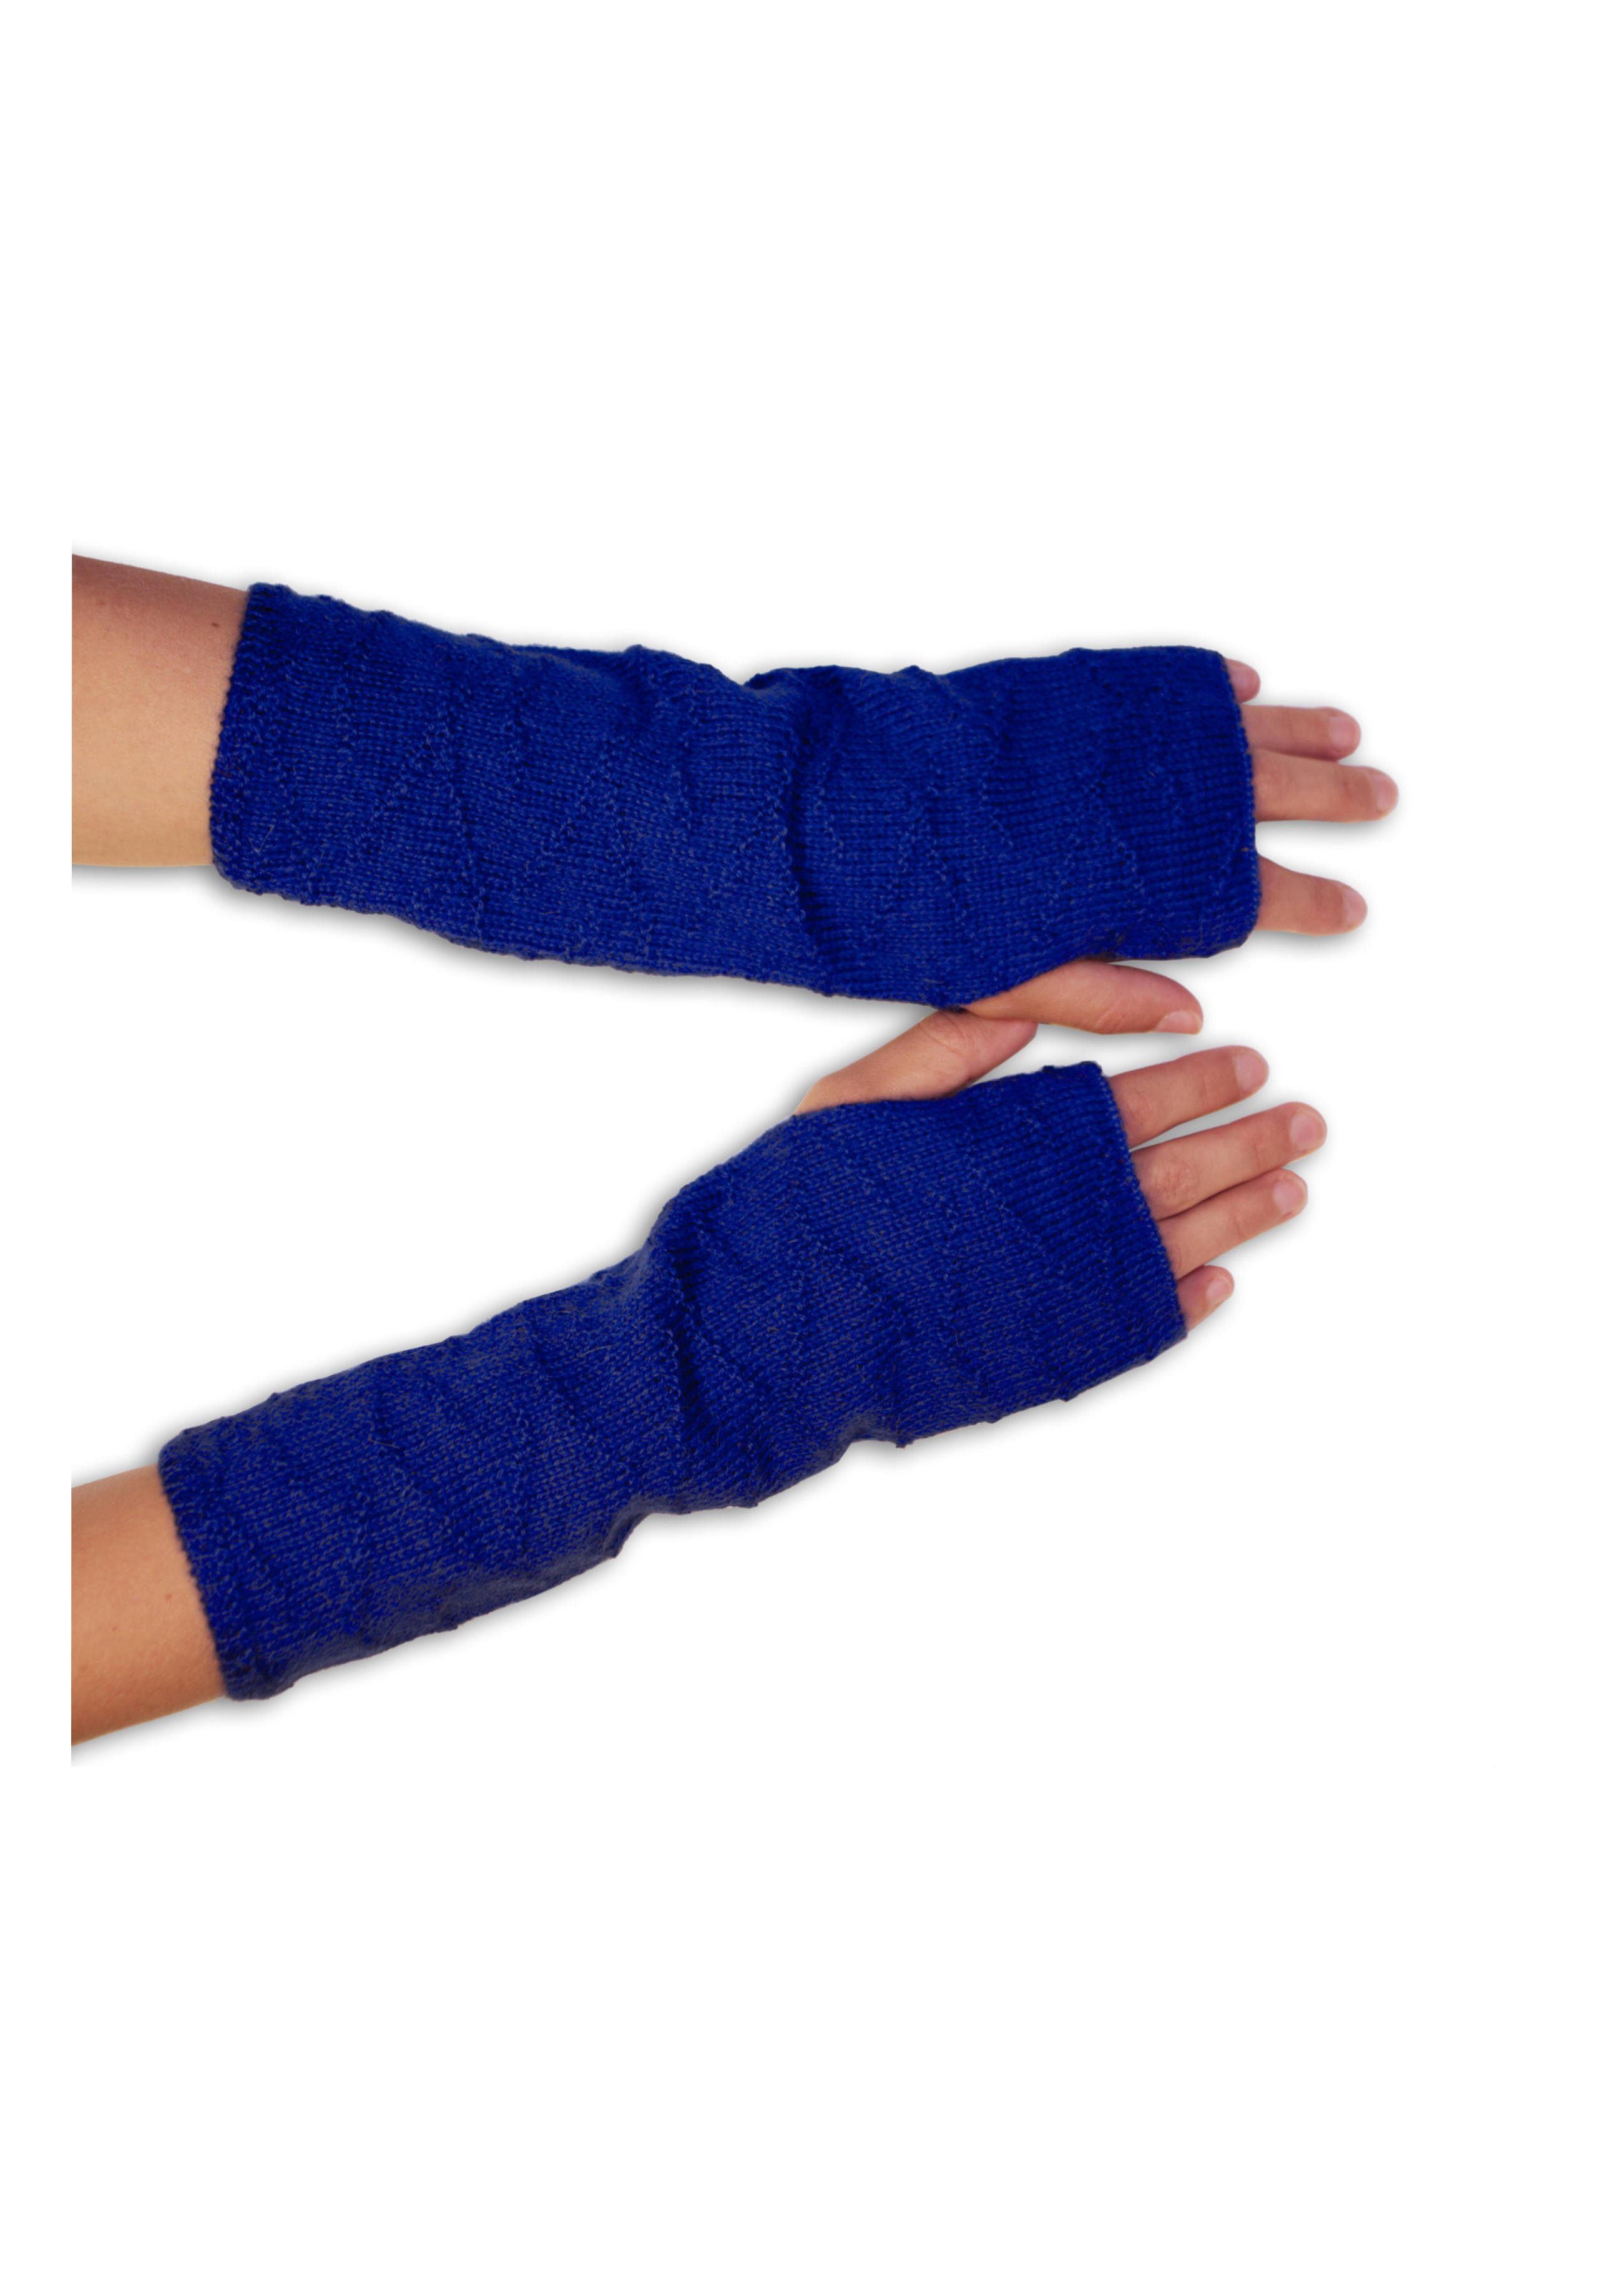 Posh Gear Armstulpen Alpaka Handstulpen 100% Alpakawolle blau